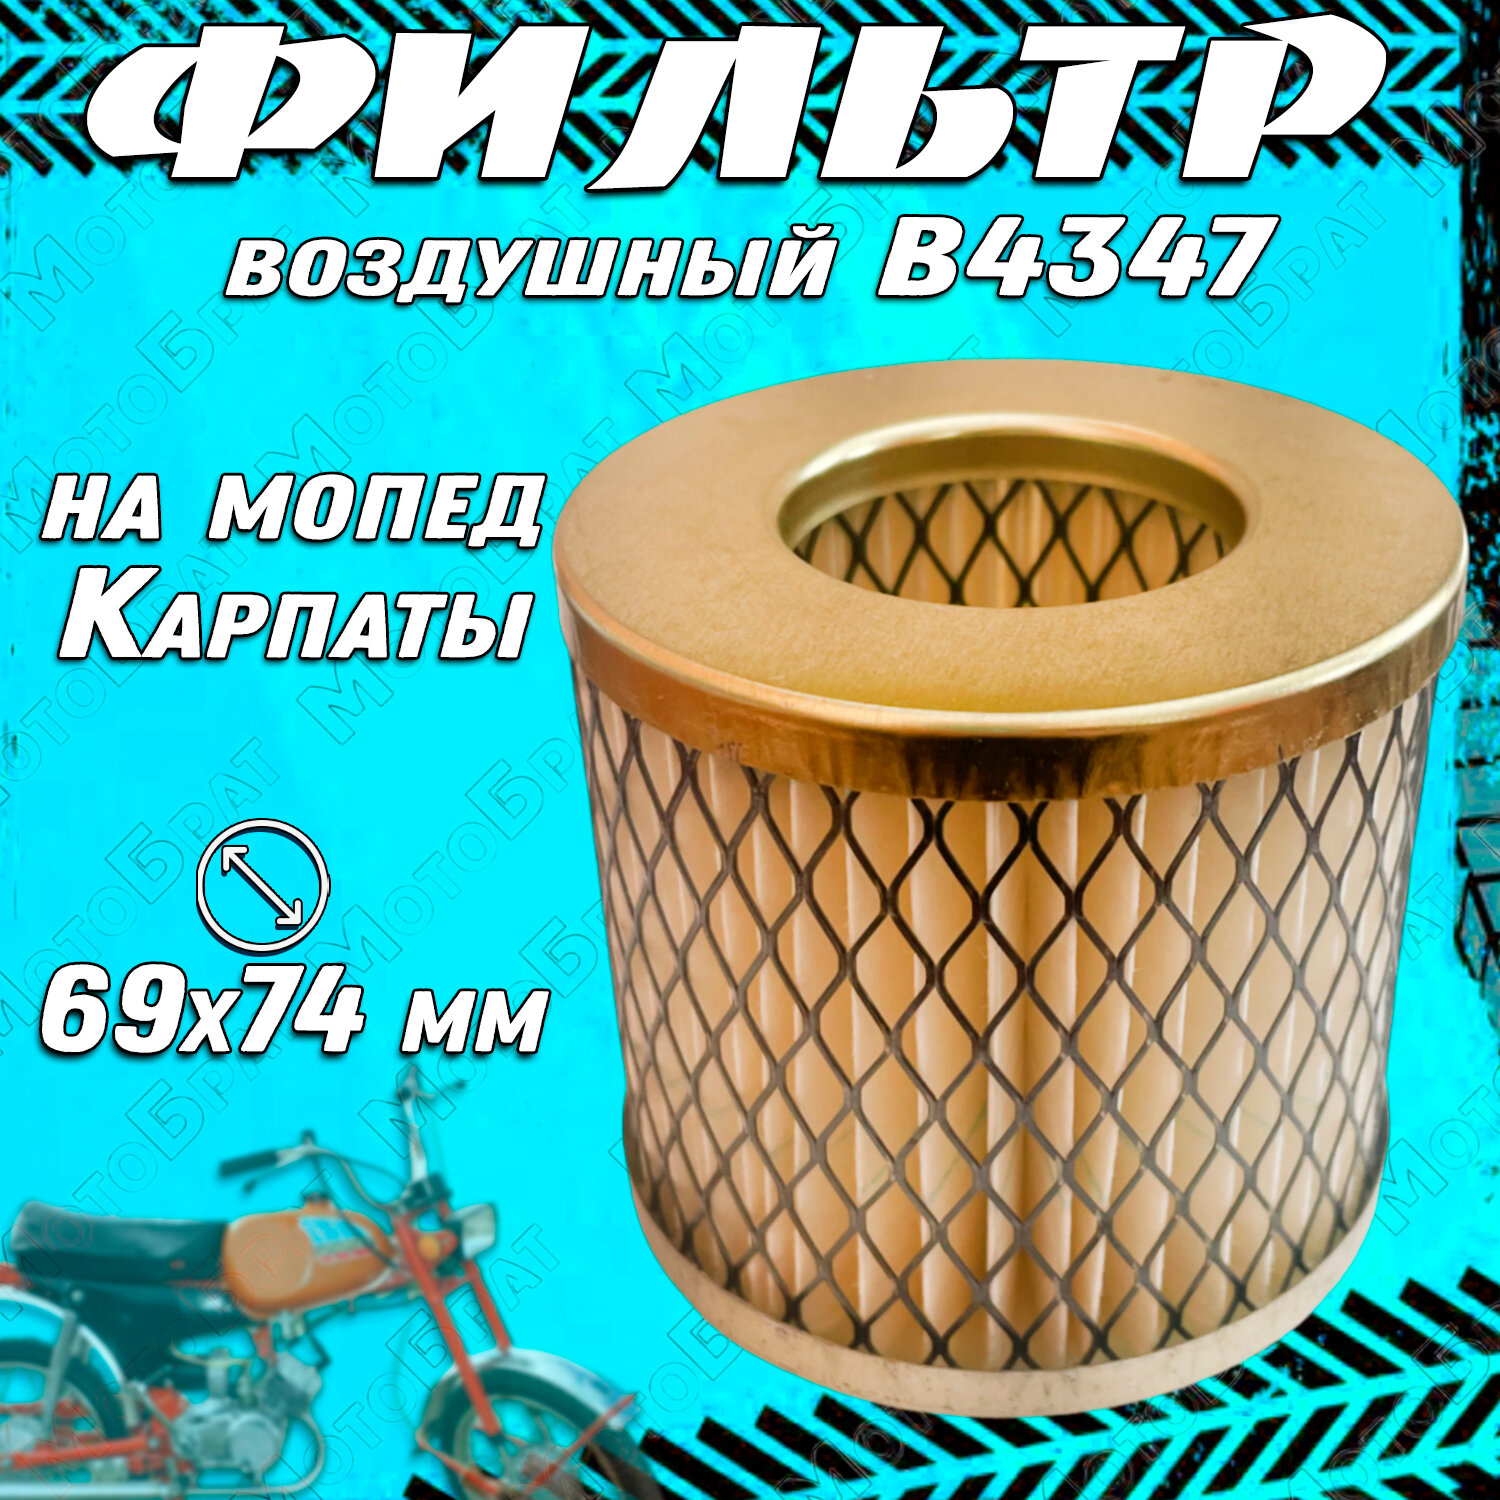 Фильтр воздушный элемент (В4347) для мопеда Карпаты